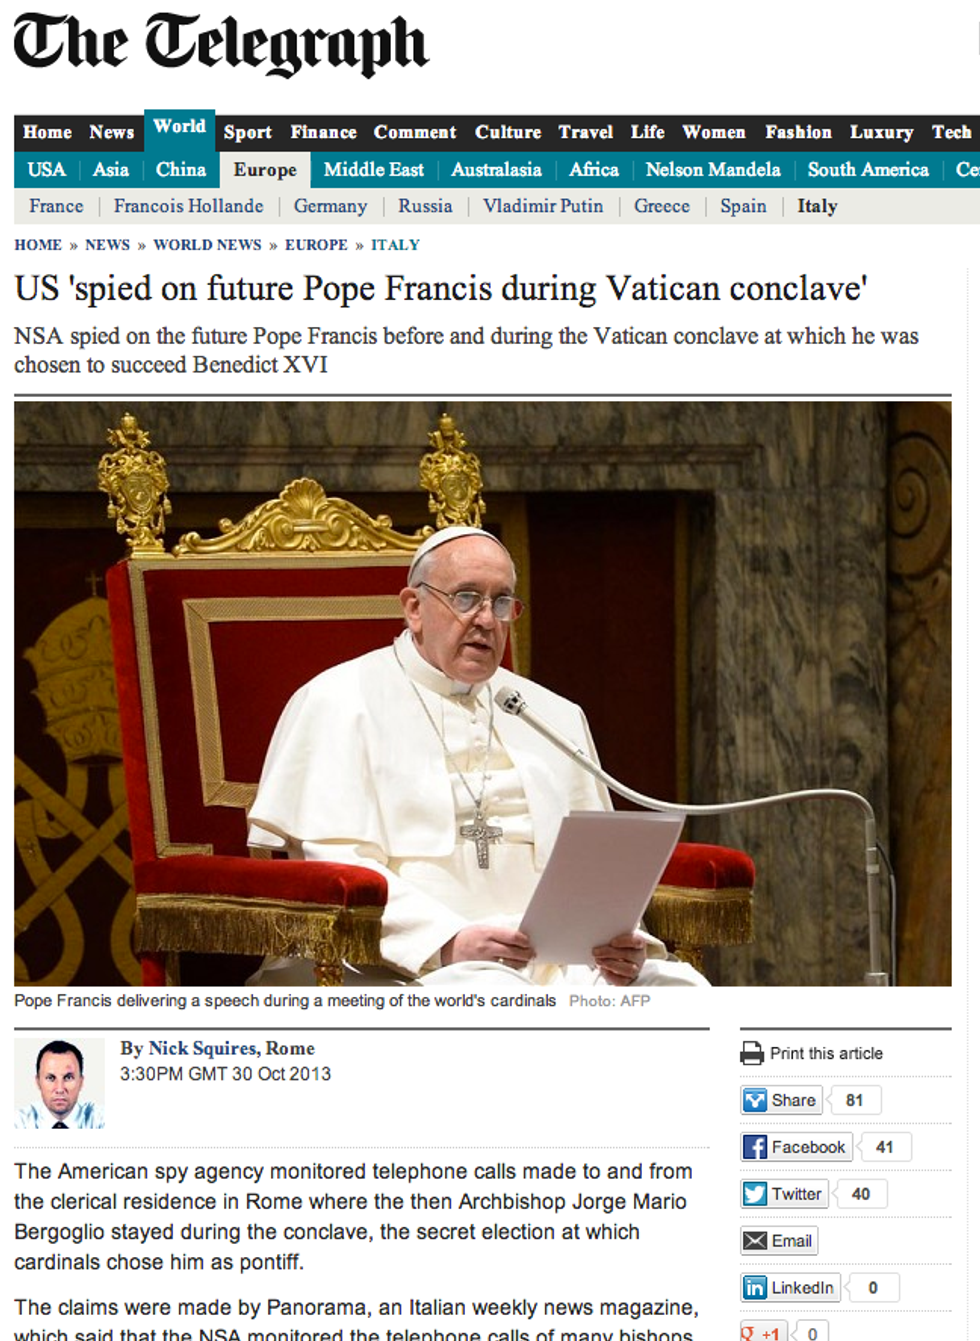 Il Papa intercettato. L'esclusiva di Panorama fa il giro del mondo